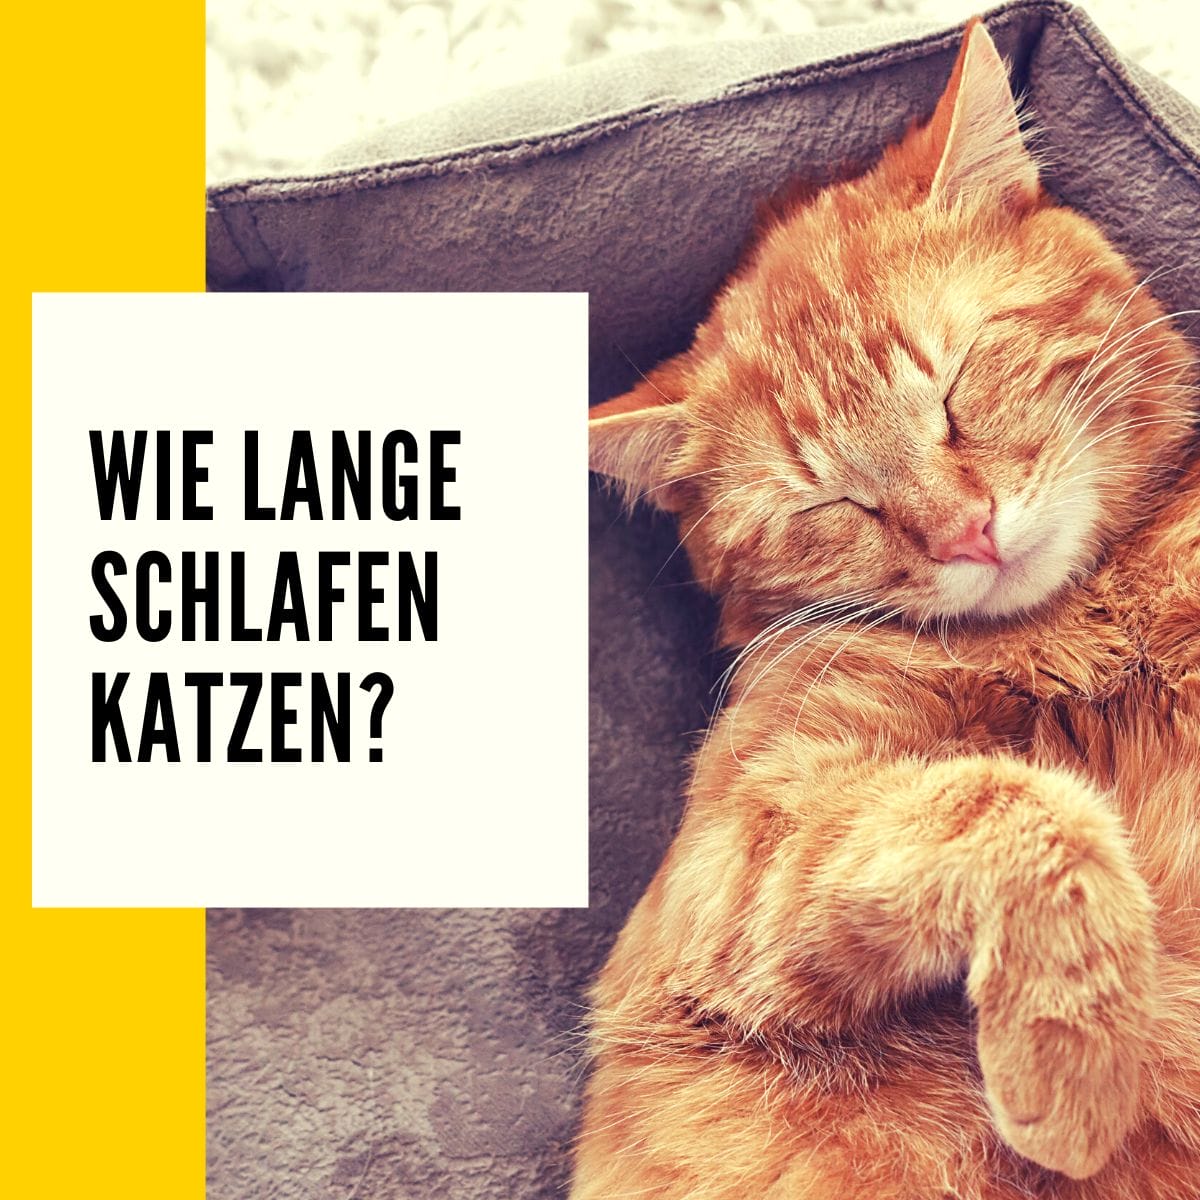 Der Katzenschlaf - Wie lange schlafen Katzen: Tipps & Katzen Ratgeber!